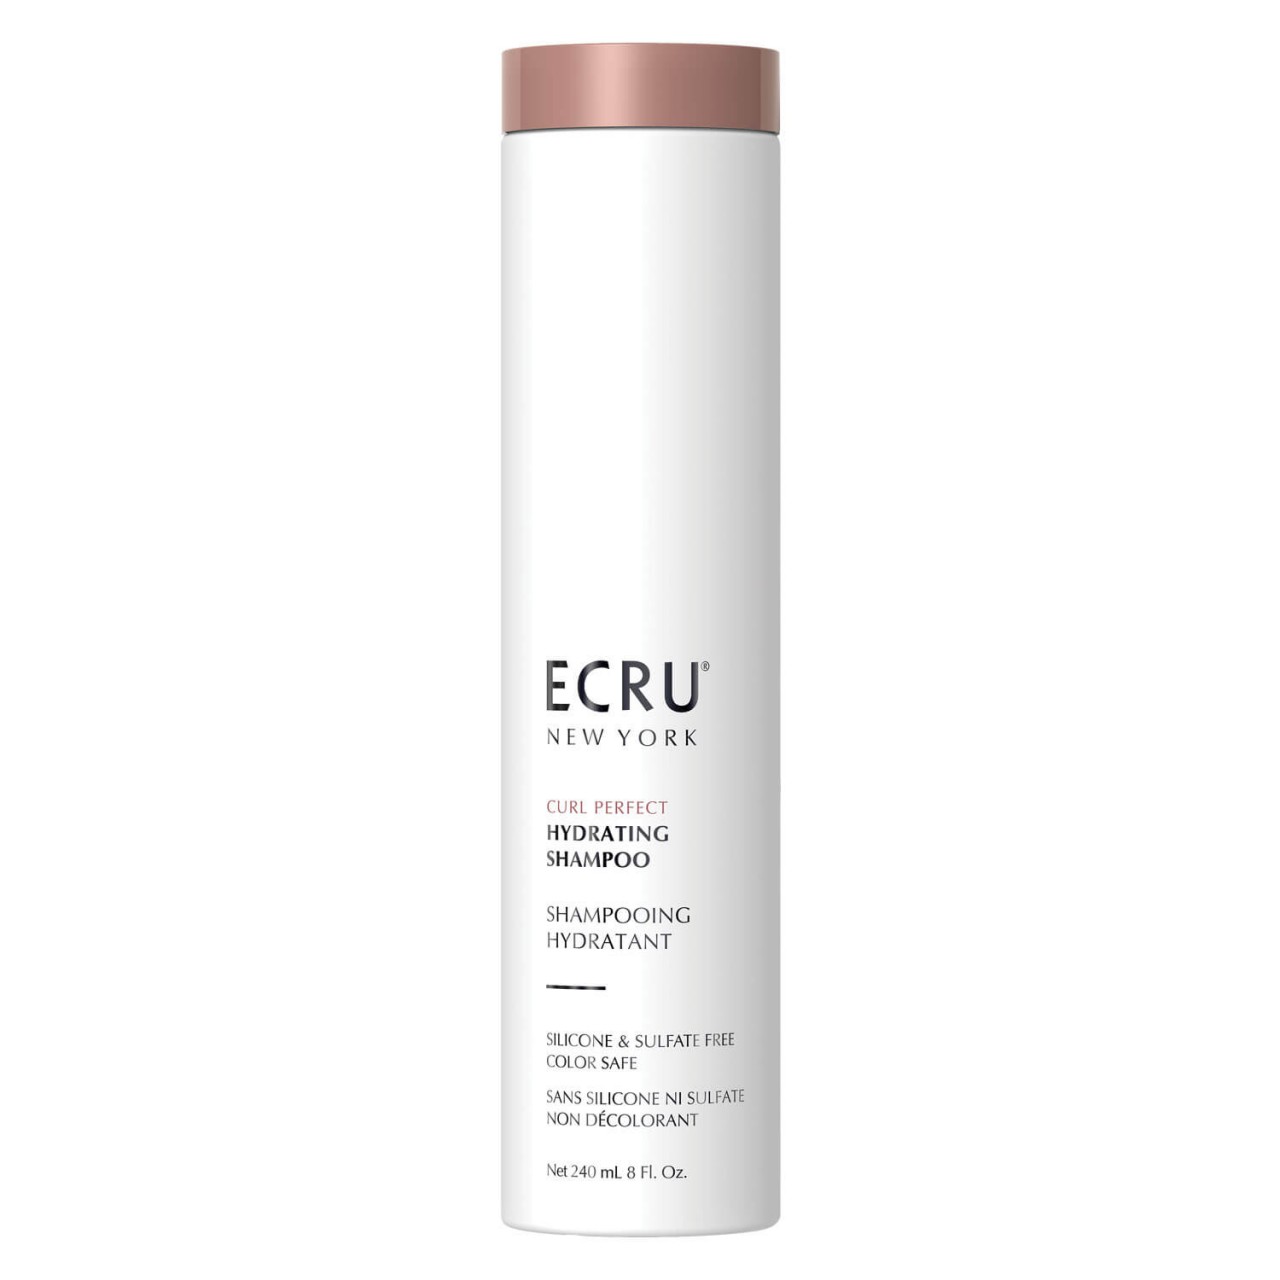 ECRU NY Curl Perfect - Hydrating Shampoo von Ecru New York